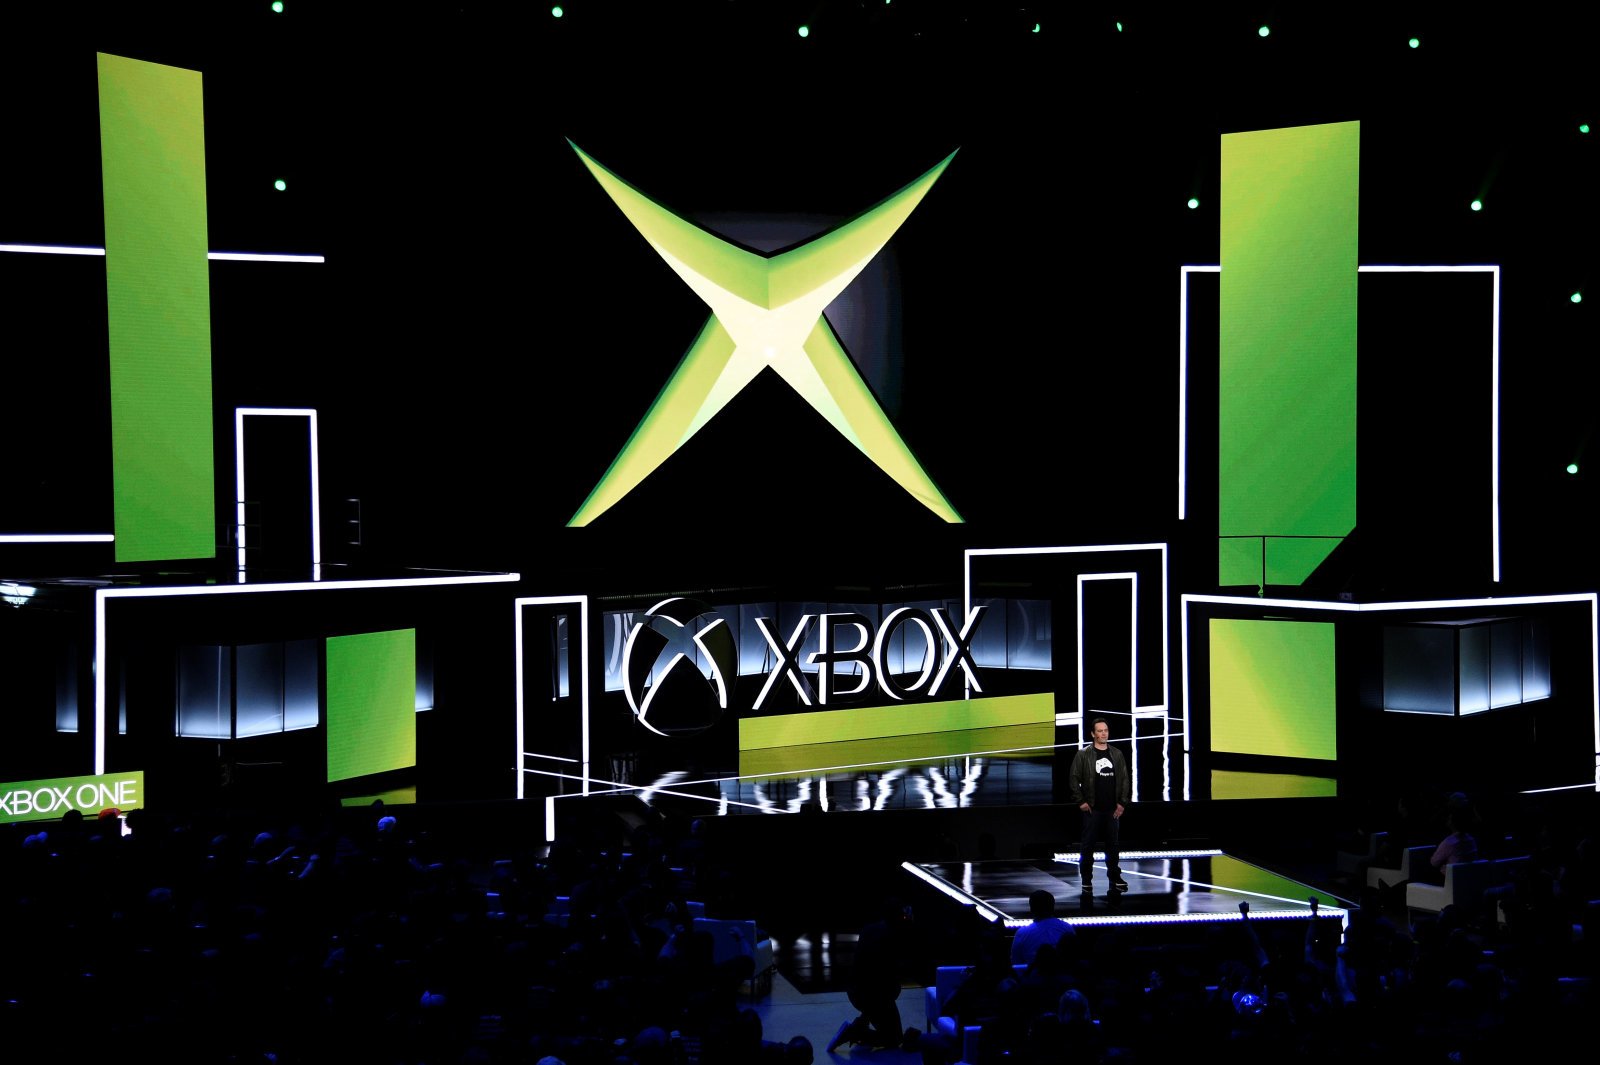 Παίξε το πρώτο σετ παιχνιδιών του "ορίτζιναλ" Xbox στο Xbox One σου